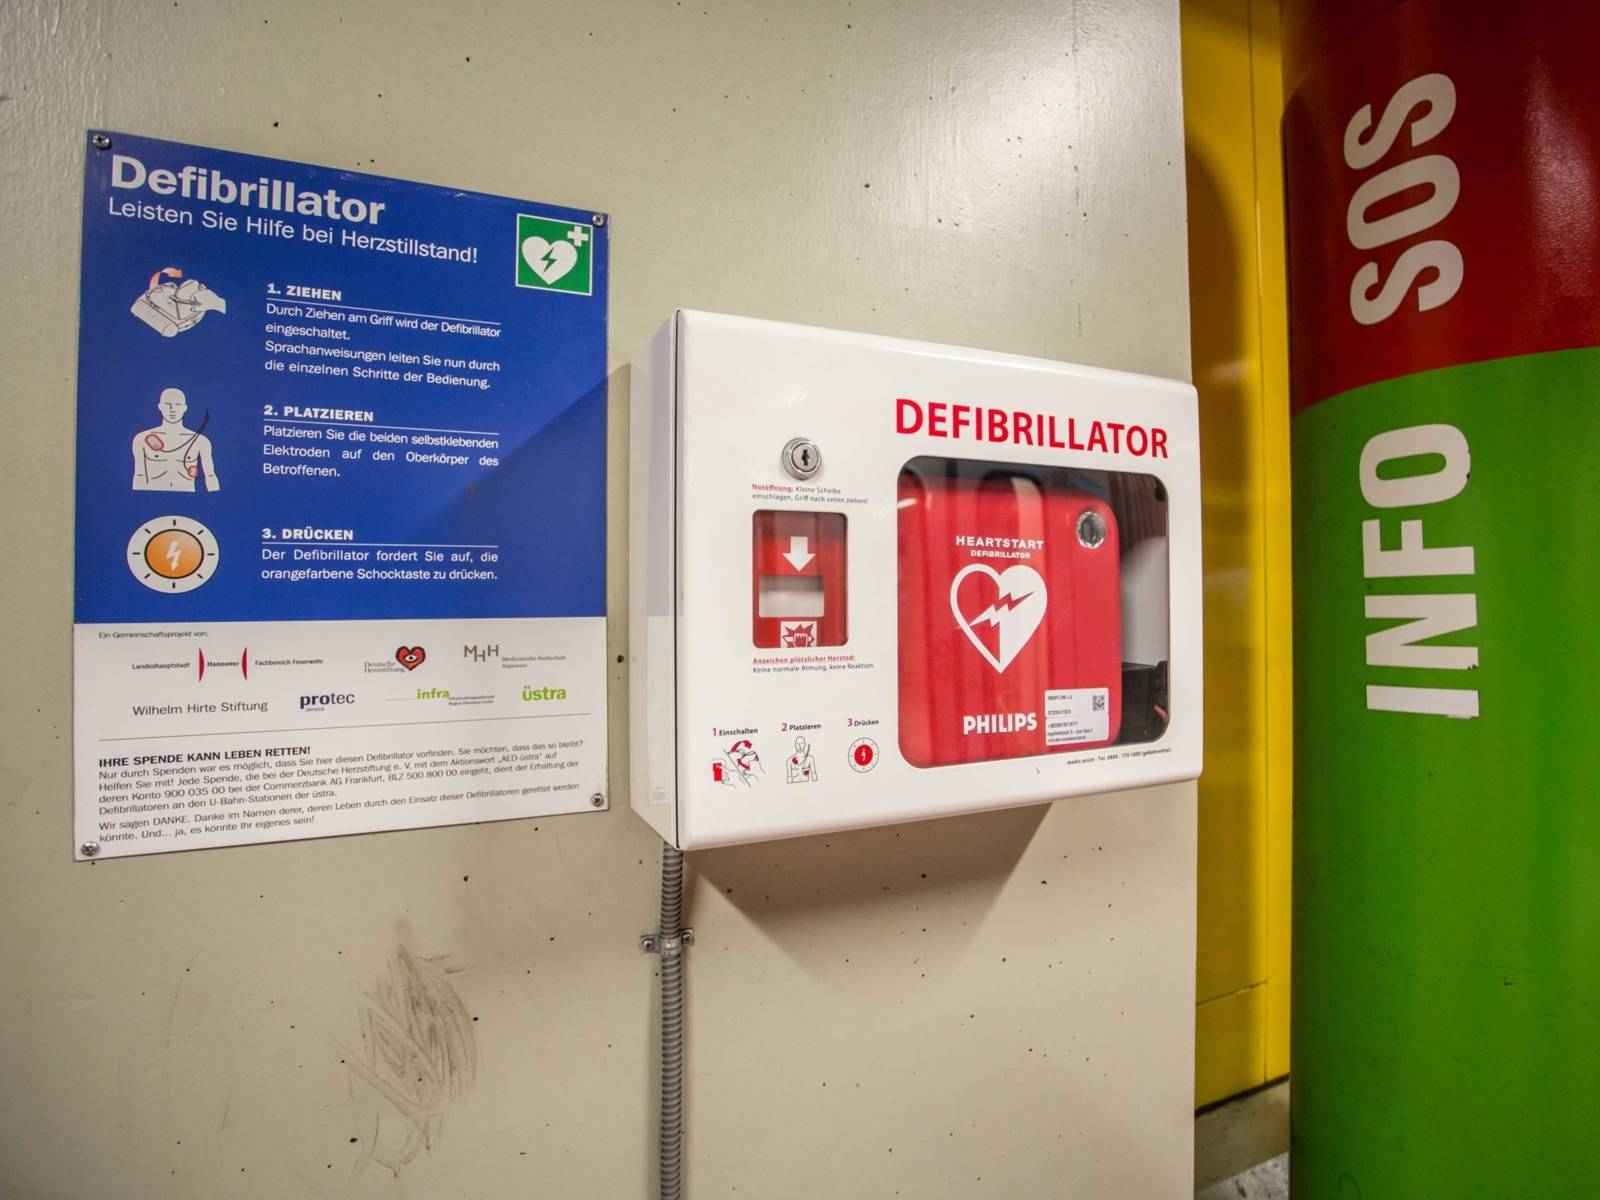 Ein Defibrillator an der Wand, daneben eine Notrufsäule